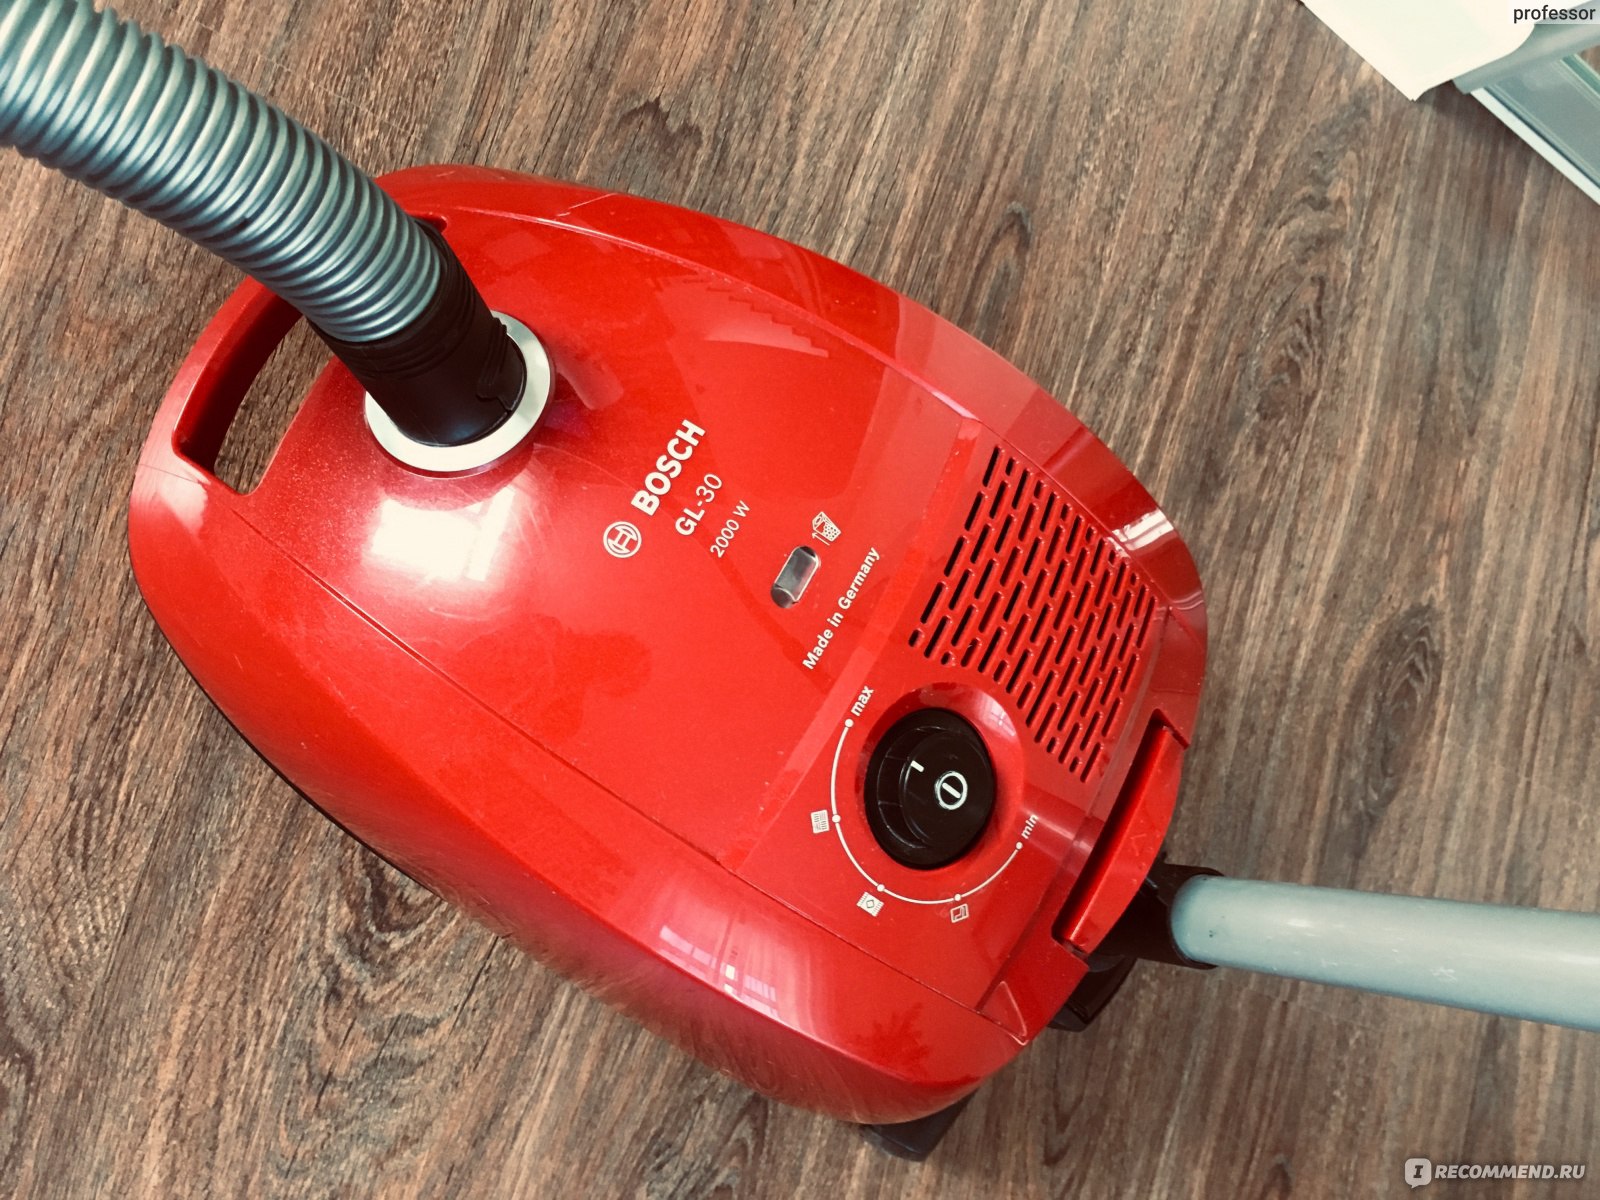 Диагностика работы пылесоса в домашних условиях: чистка и замена комплектующих